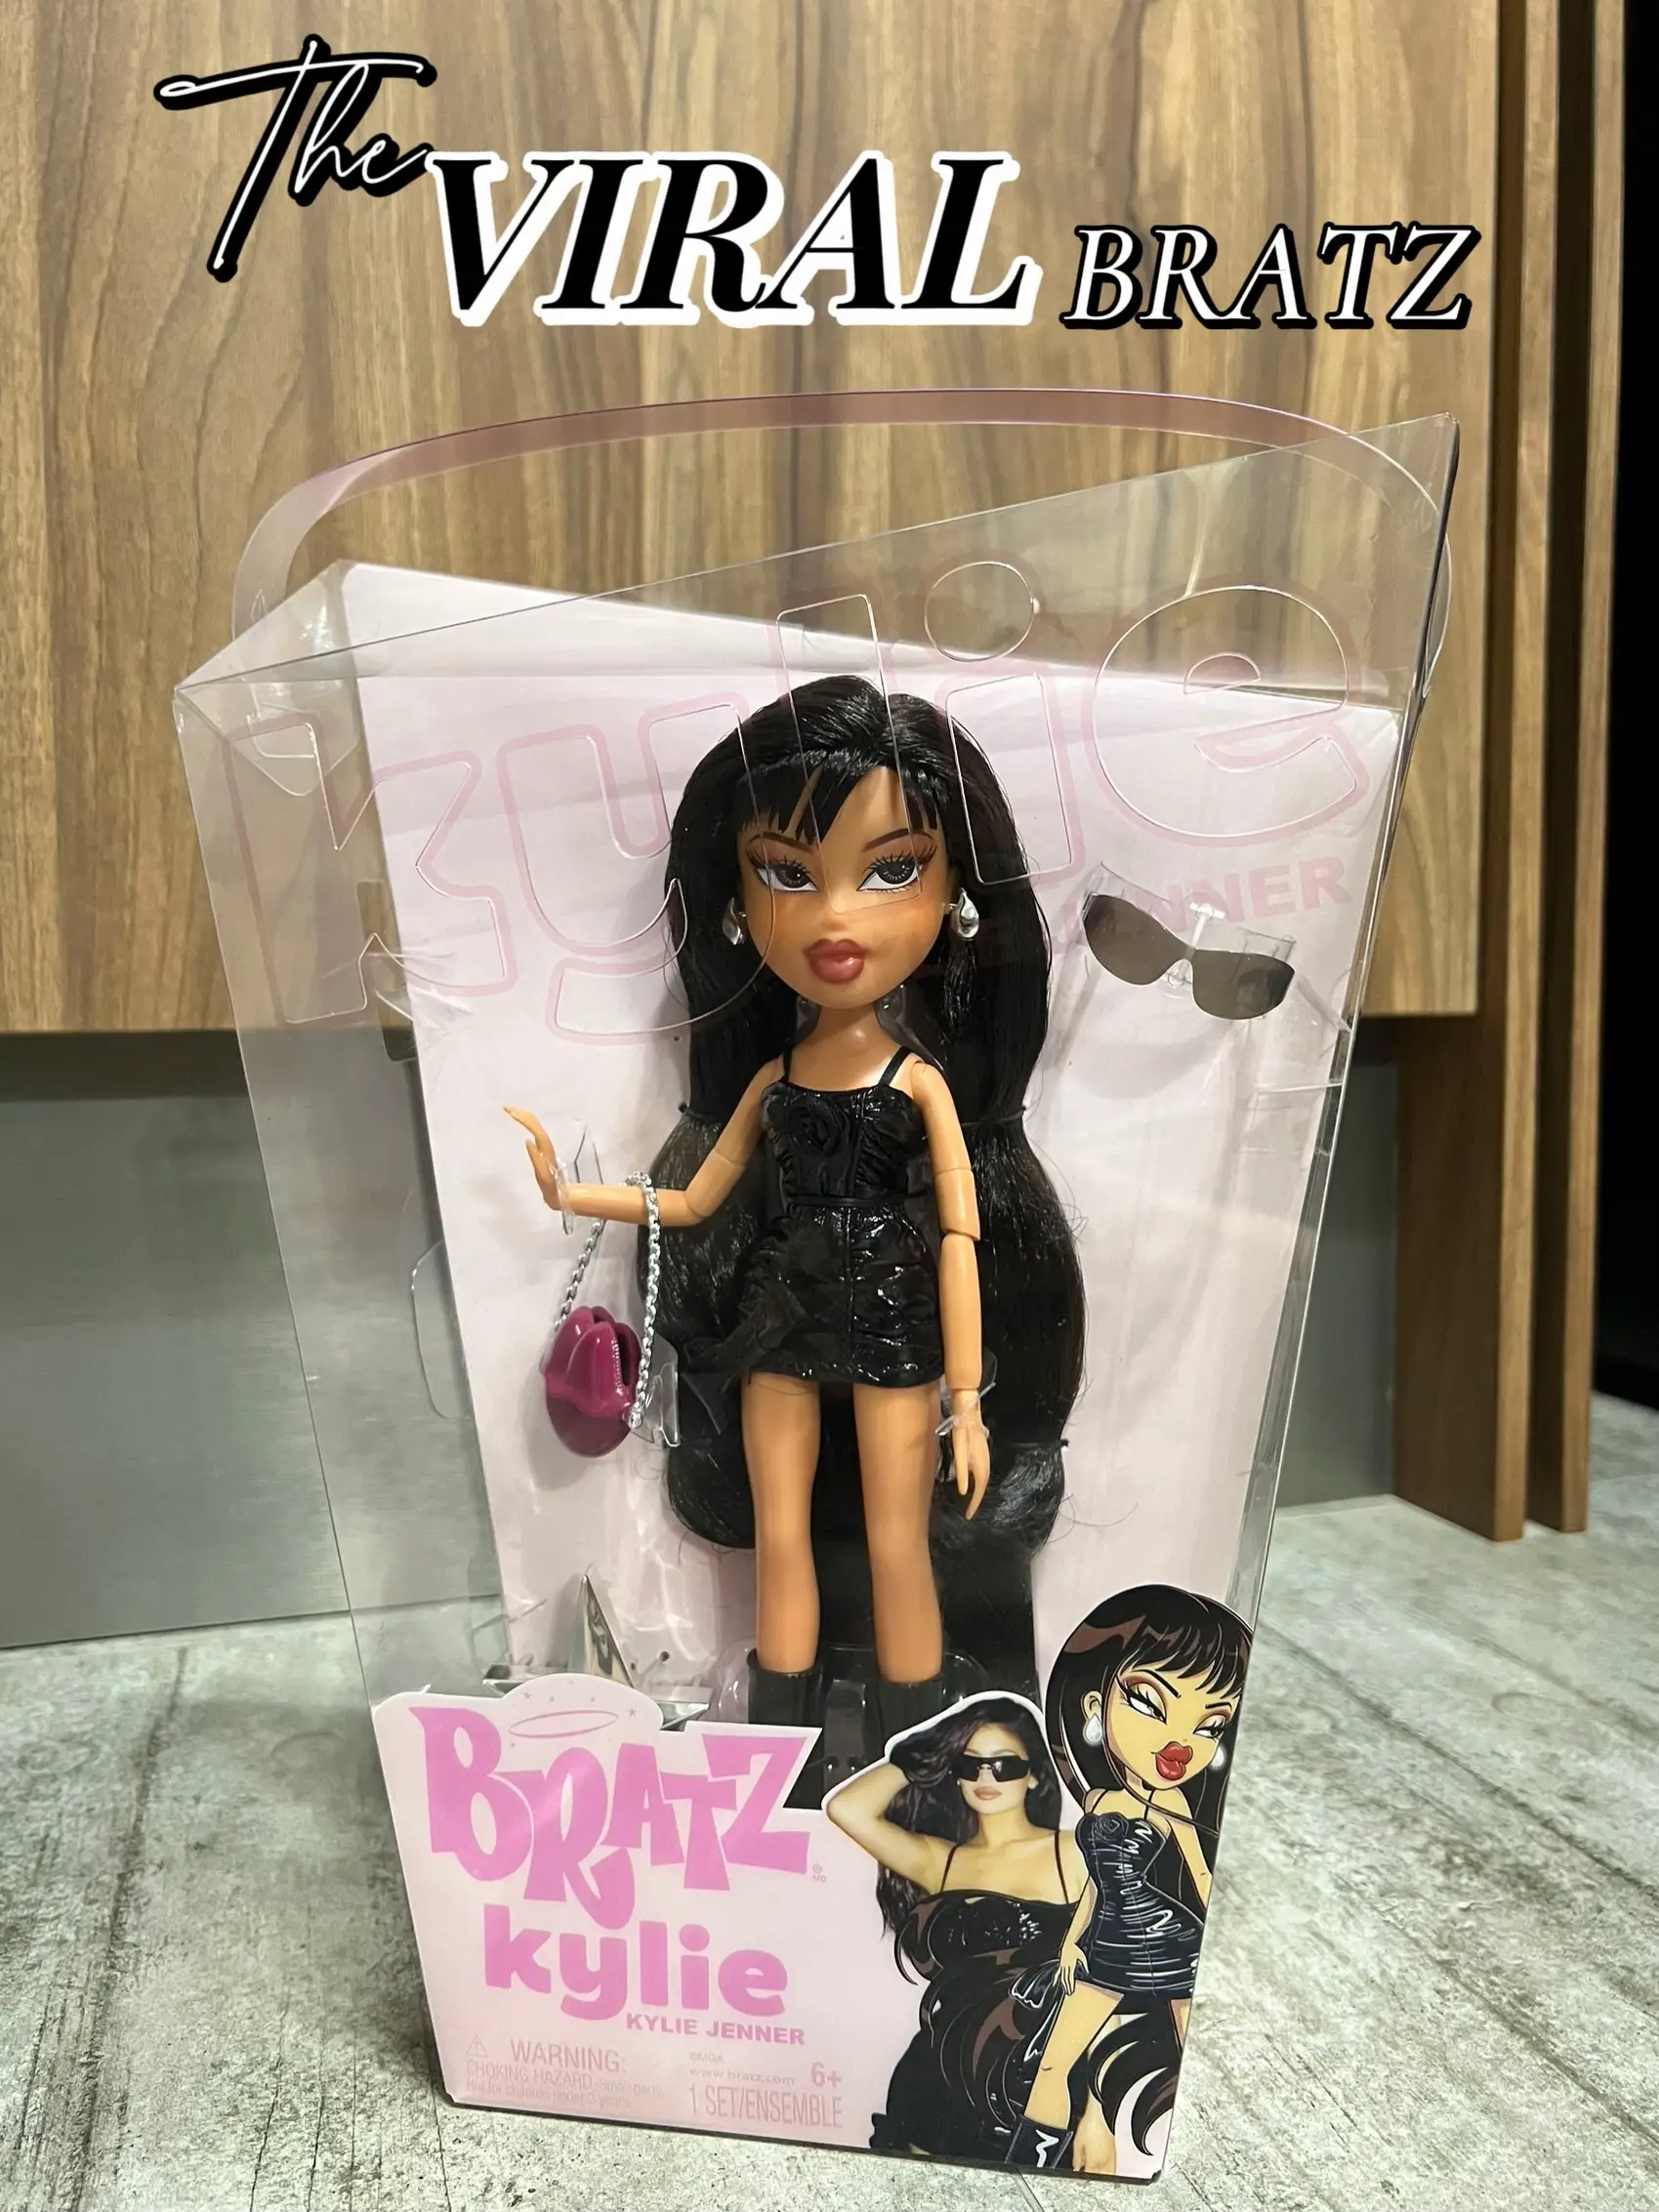 Bratz, Barbie dolls get no-makeup makeover at B.C. workshop